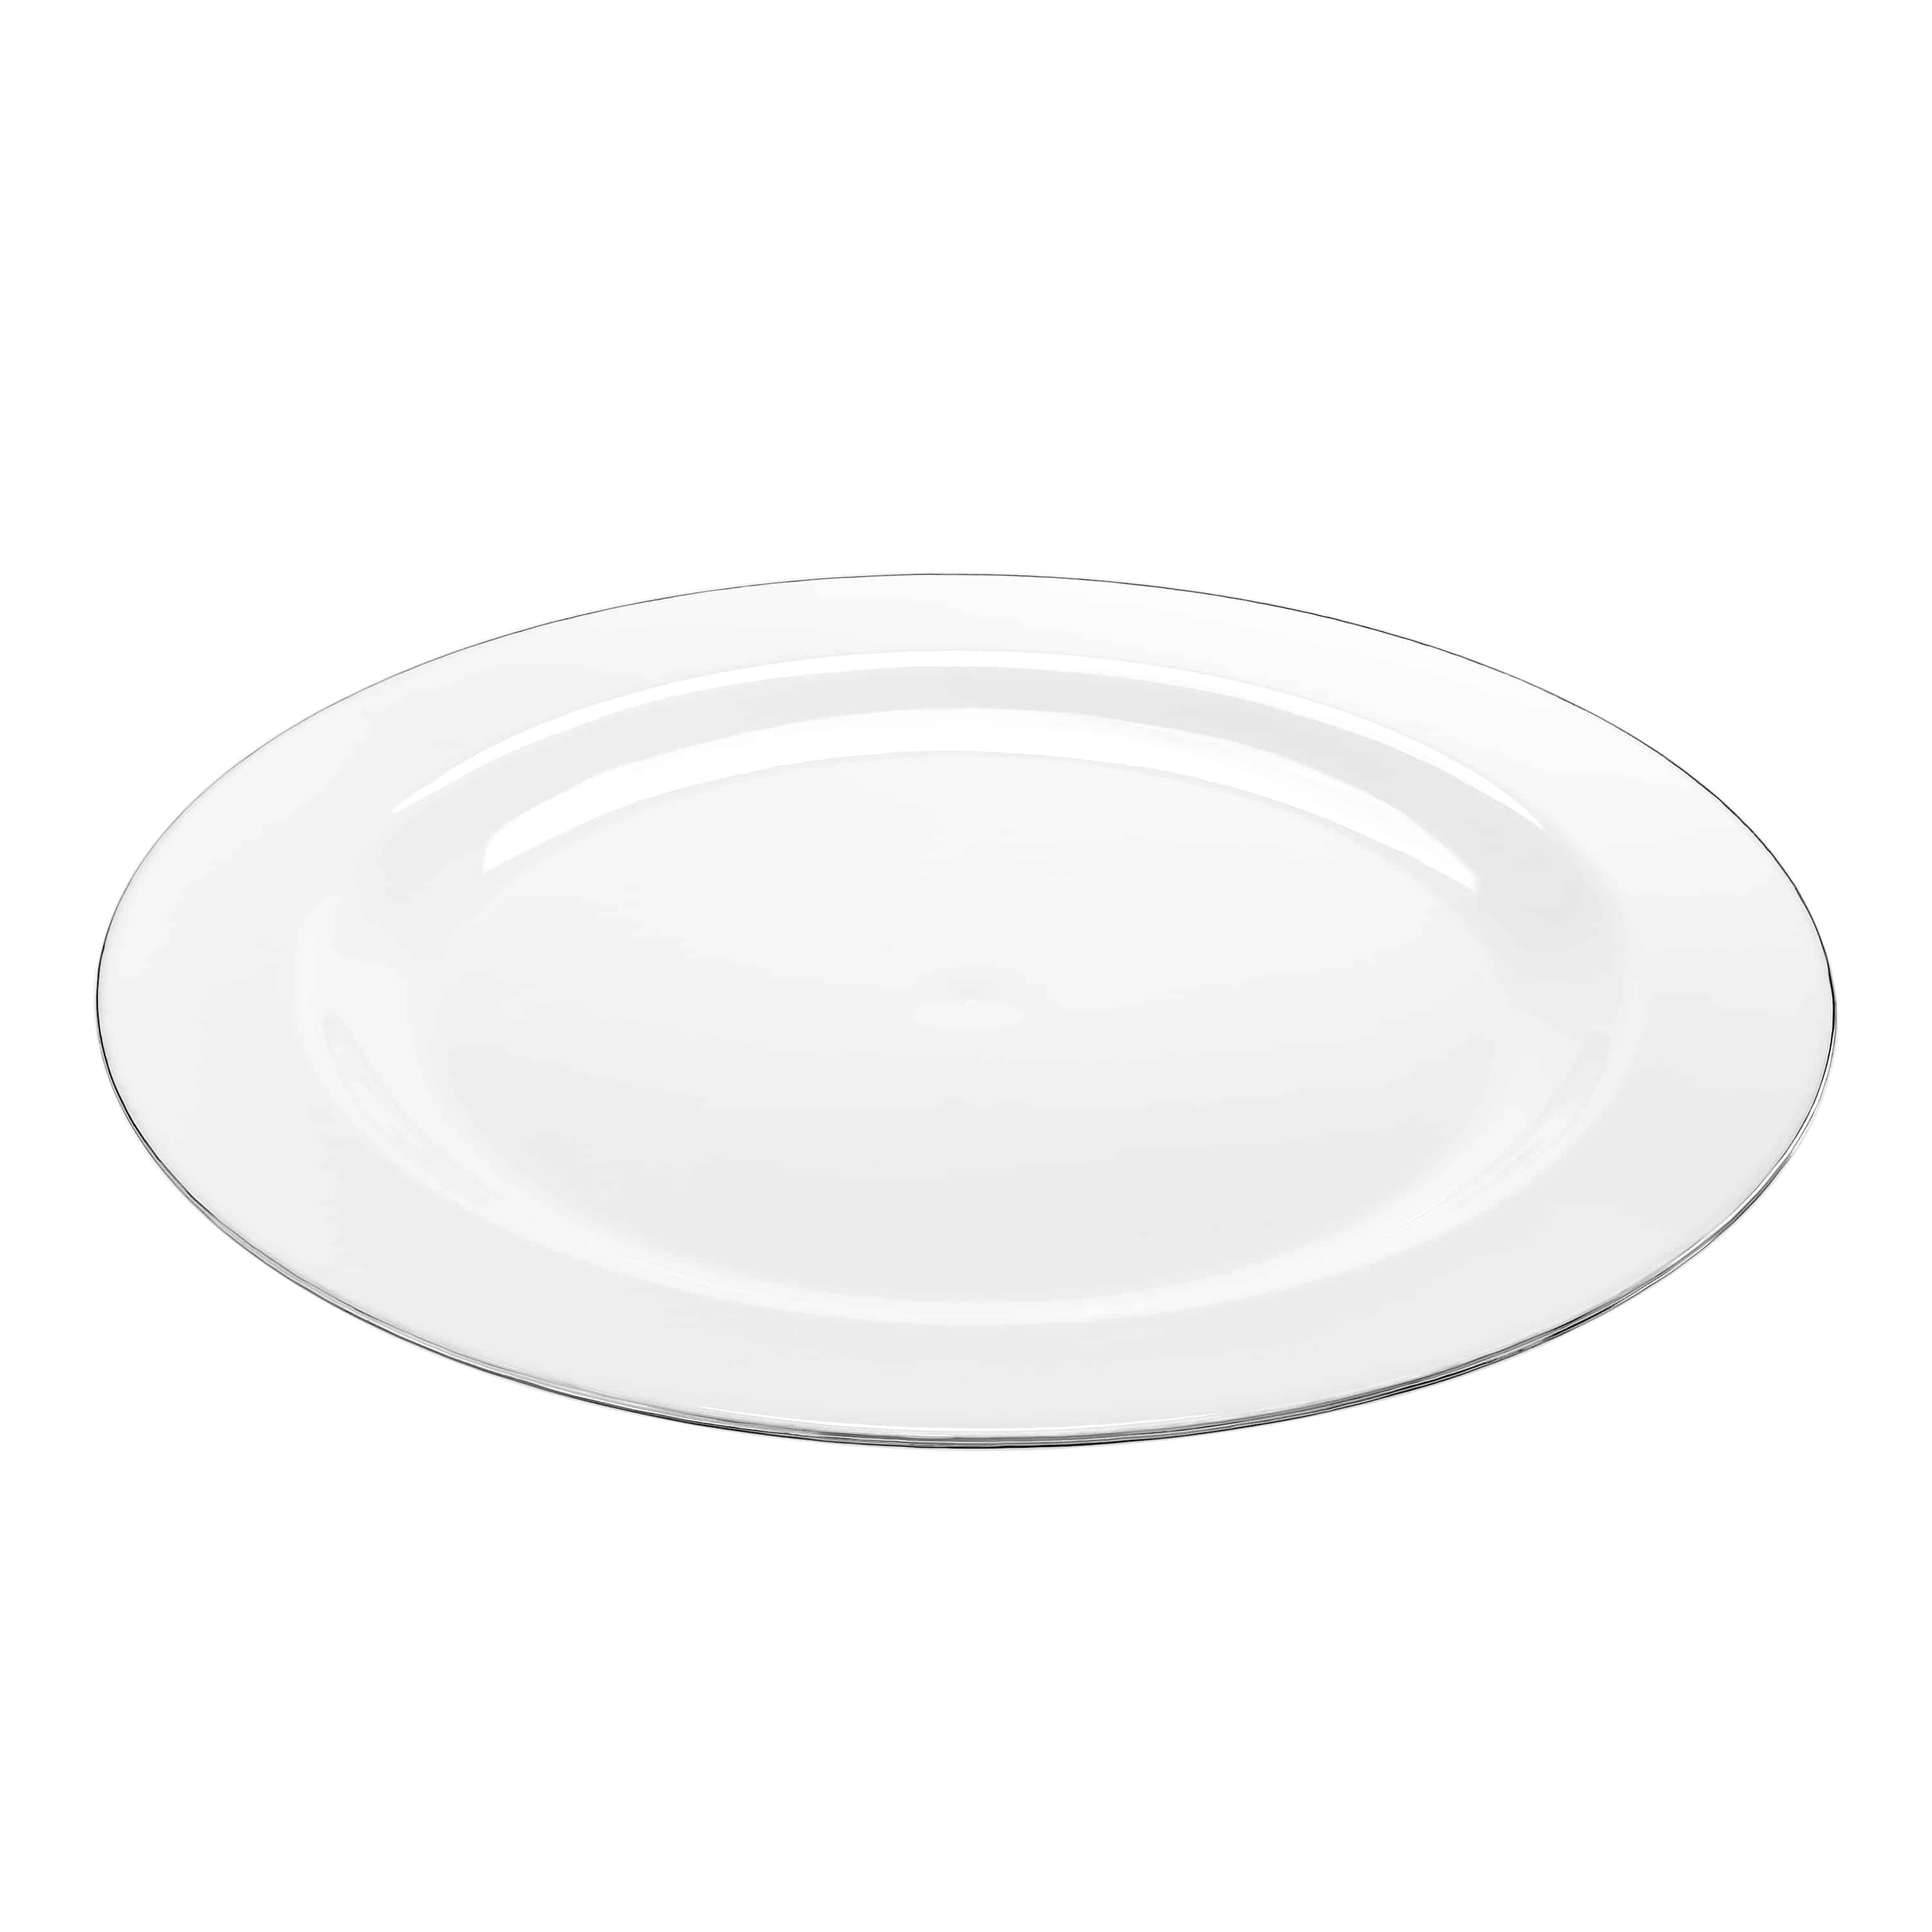 Magnificence Silver Edge Premium Plastic Round Dinnerware